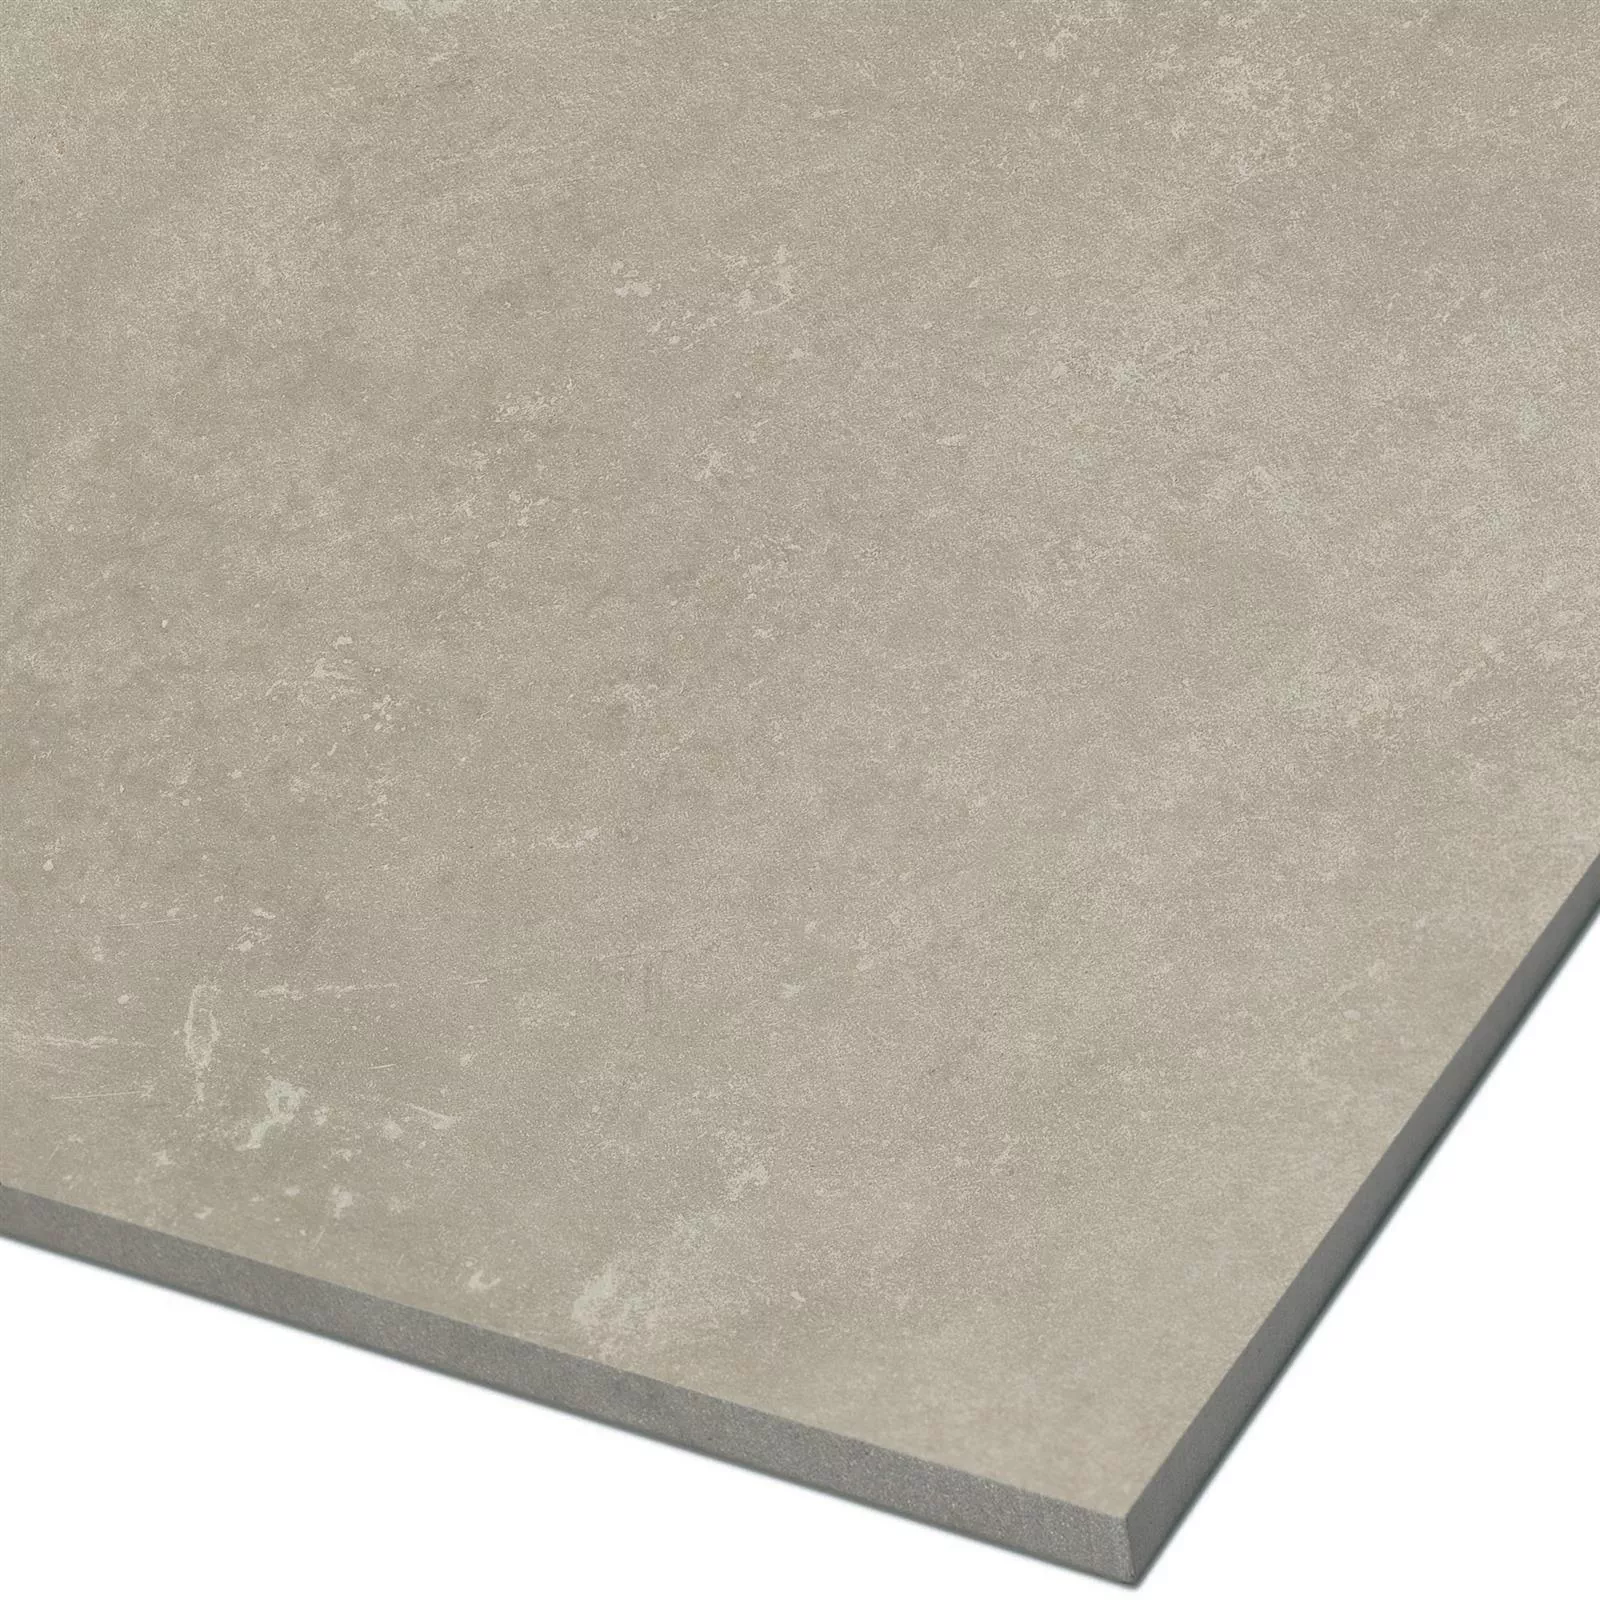 Sample Vloertegels Cement Optic Nepal Slim Beige 100x100cm